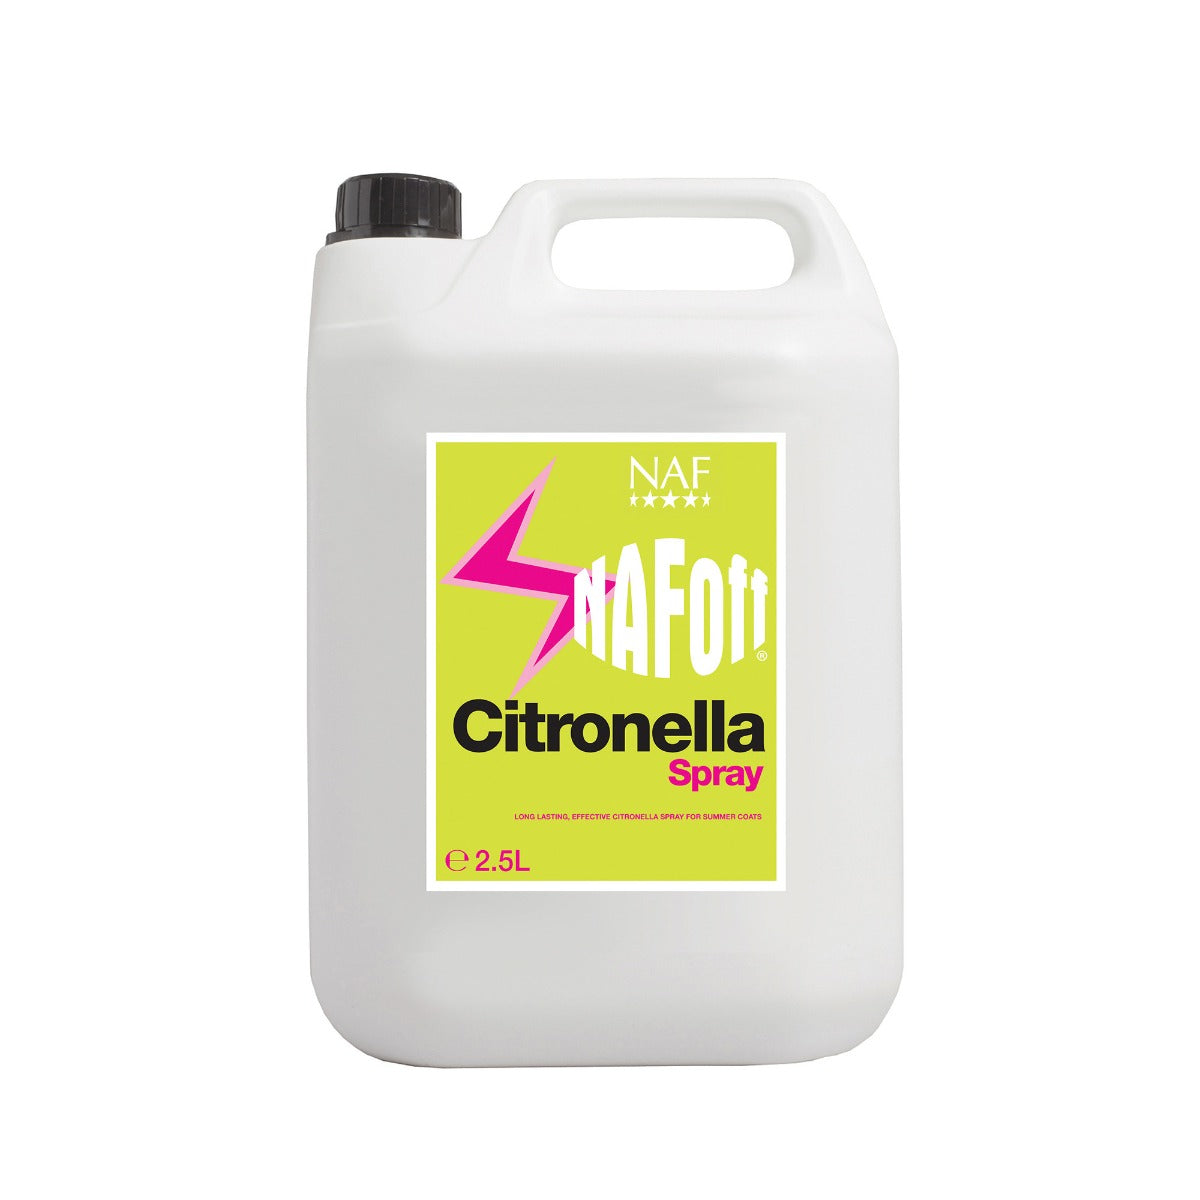 NAF OFF Citronella Spray